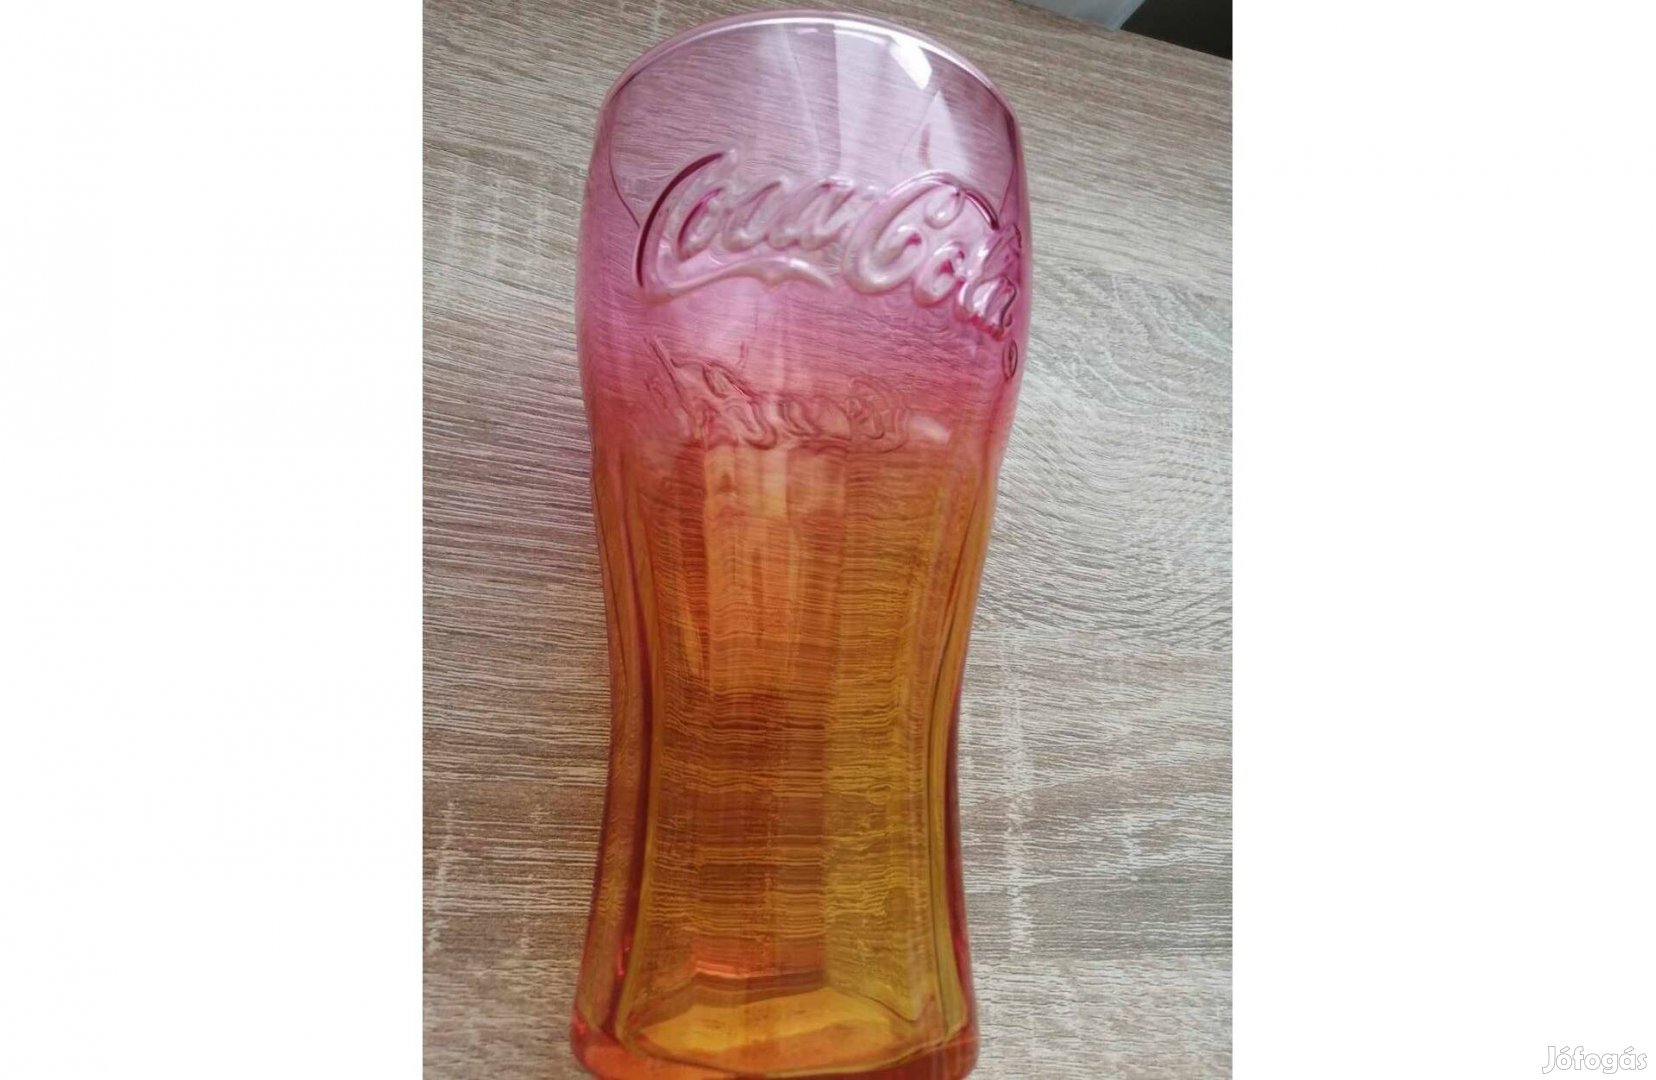 Coca - Cola üveg pohár eladó!